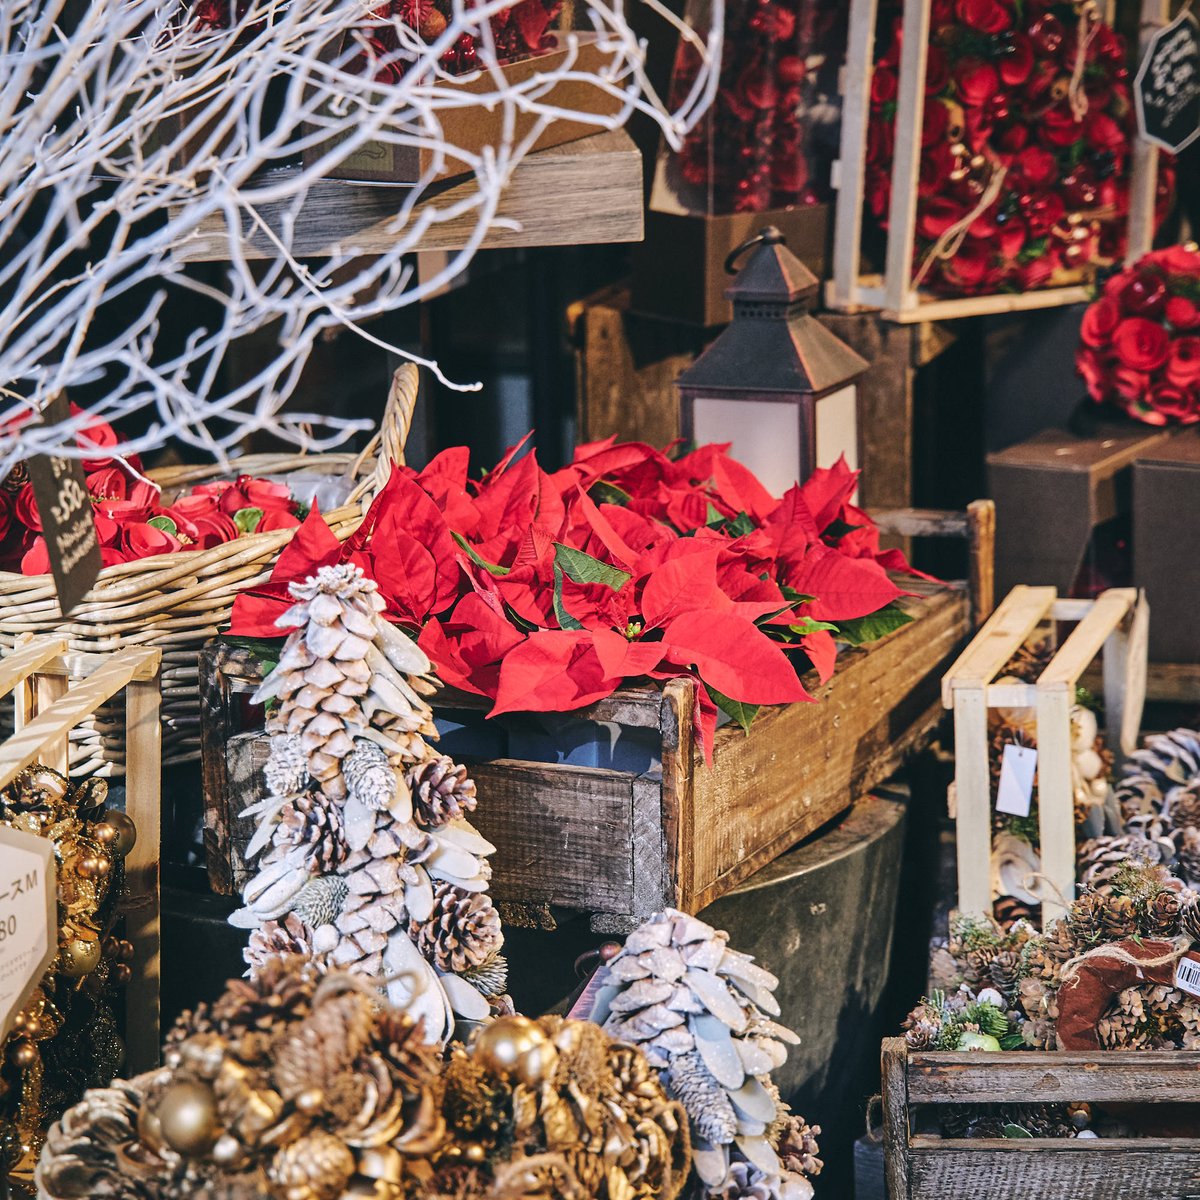 青山フラワーマーケット クリスマスを彩る花 ポインセチア が 青山フラワーマーケットの店頭にも並び始めました 11月ともなるとクリスマスはまだ先 と思いがちですが 青山フラワーマーケットのこだわりのポインセチアは 11月中旬から入荷が始まり 12